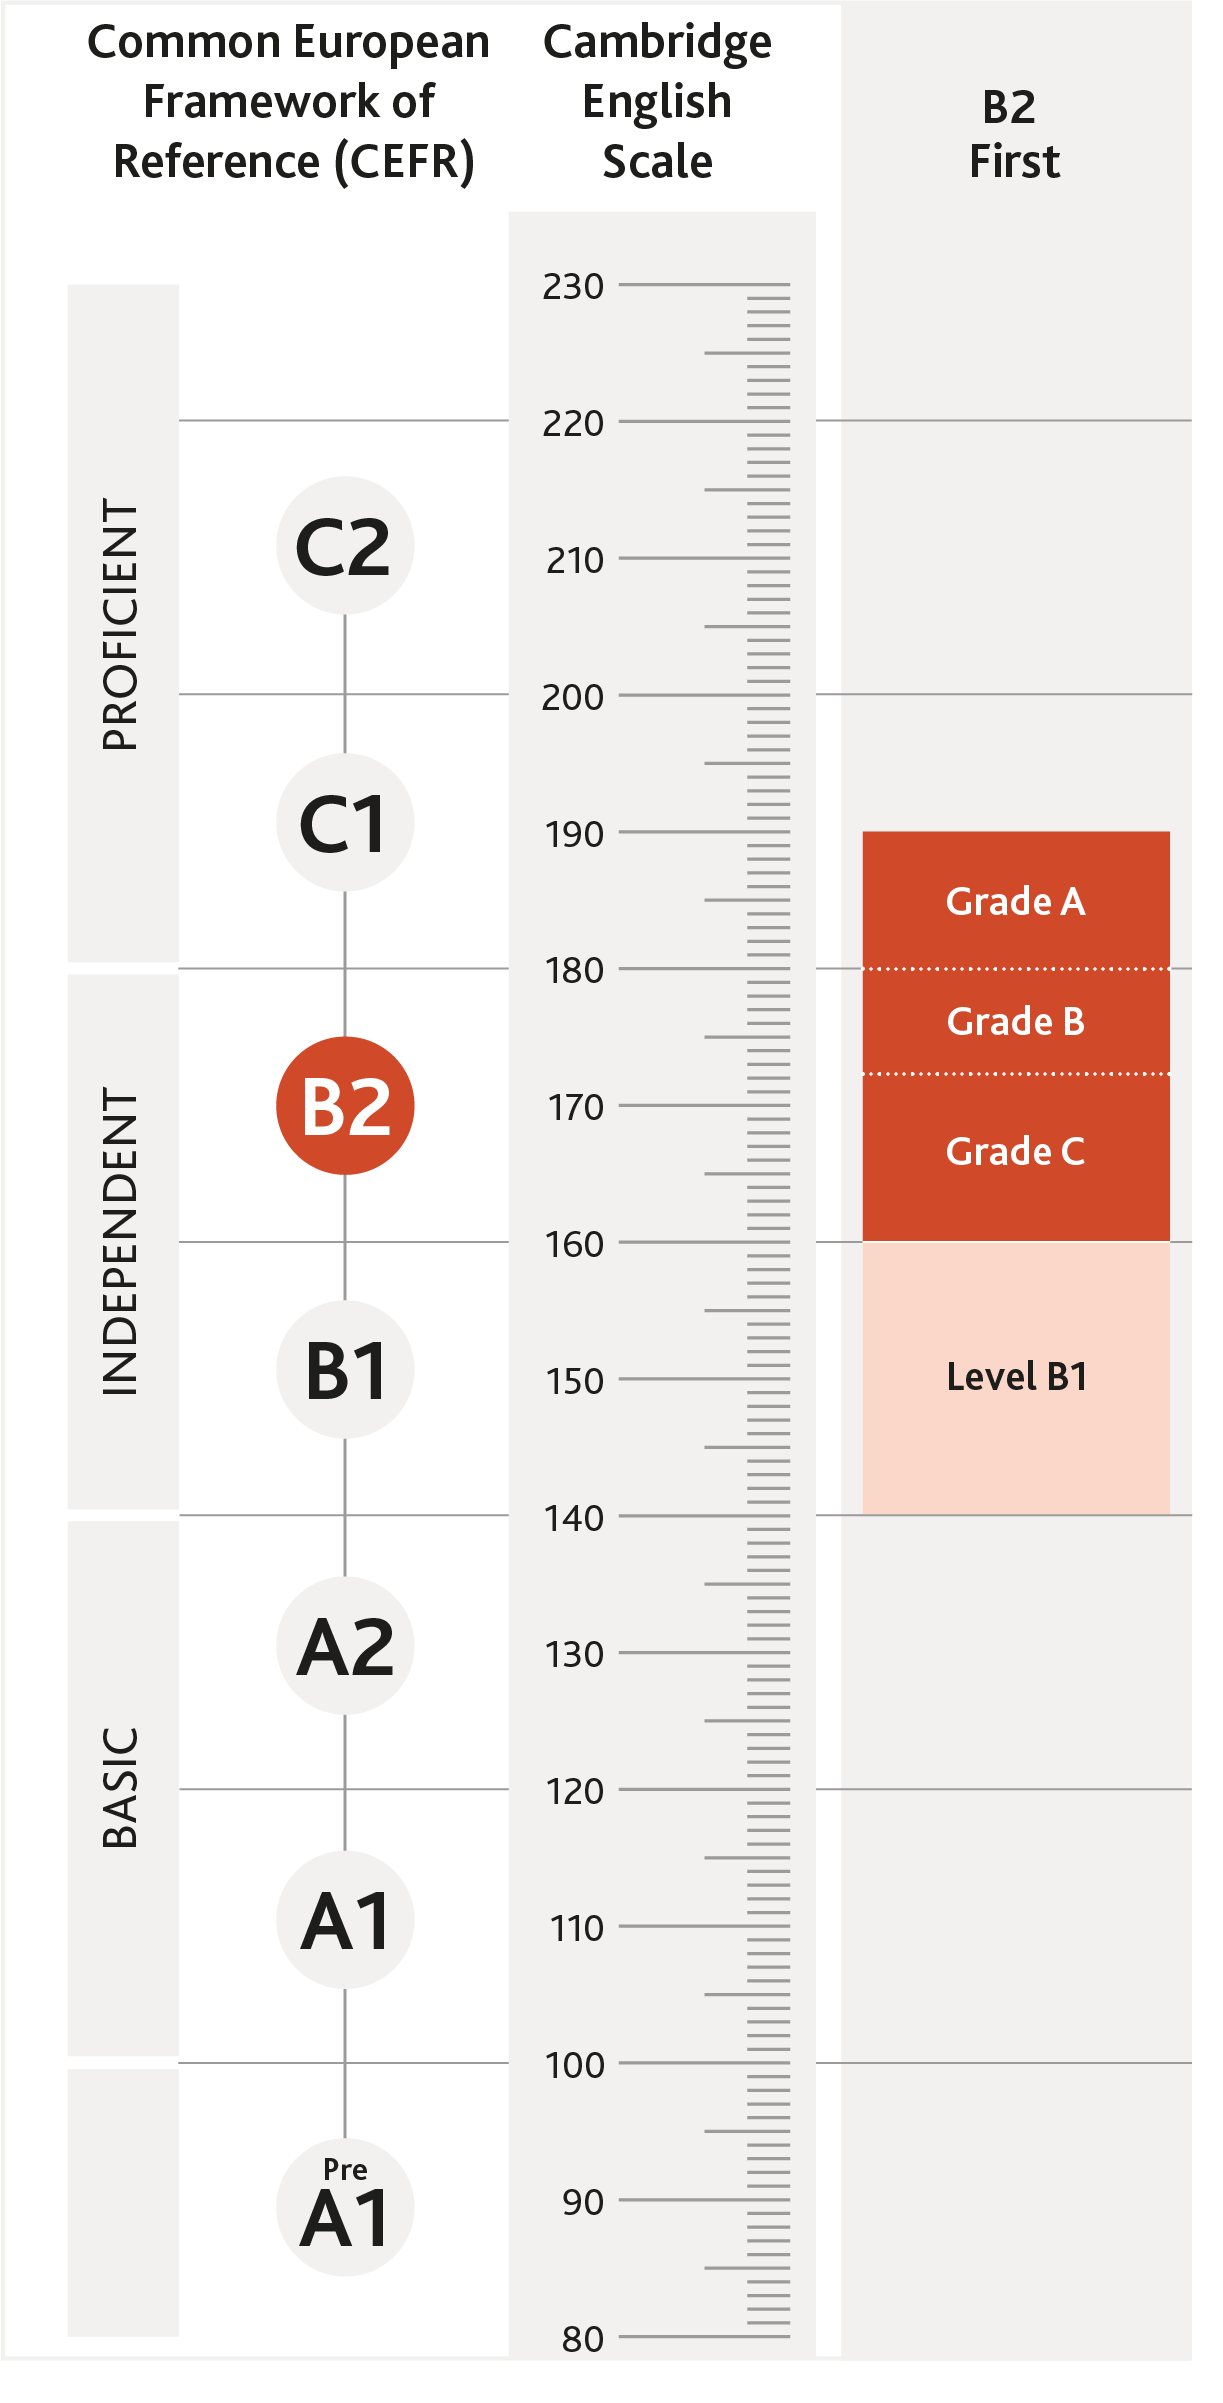 Diagrama de onde B2 First está alinhado no CEFR E Cambridge English Scale